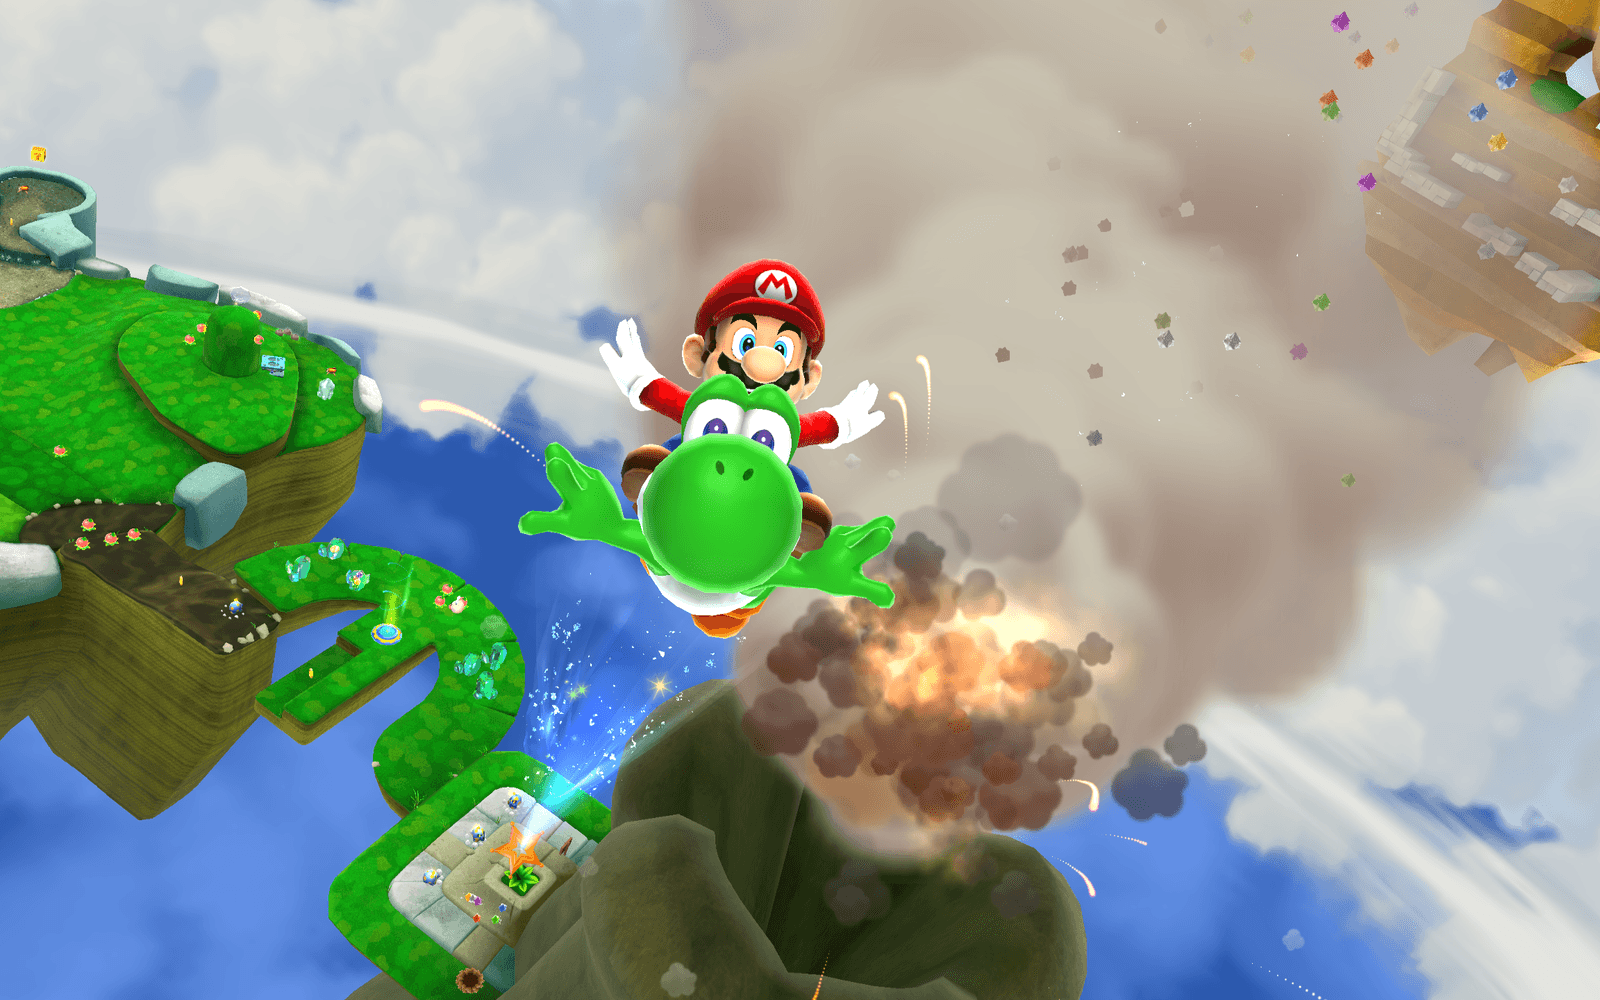 Super Mario Galaxy 2 kom tre år senare, 2010, och introducerade några nya inslag, bland annat återförenades Mario med Yoshi.